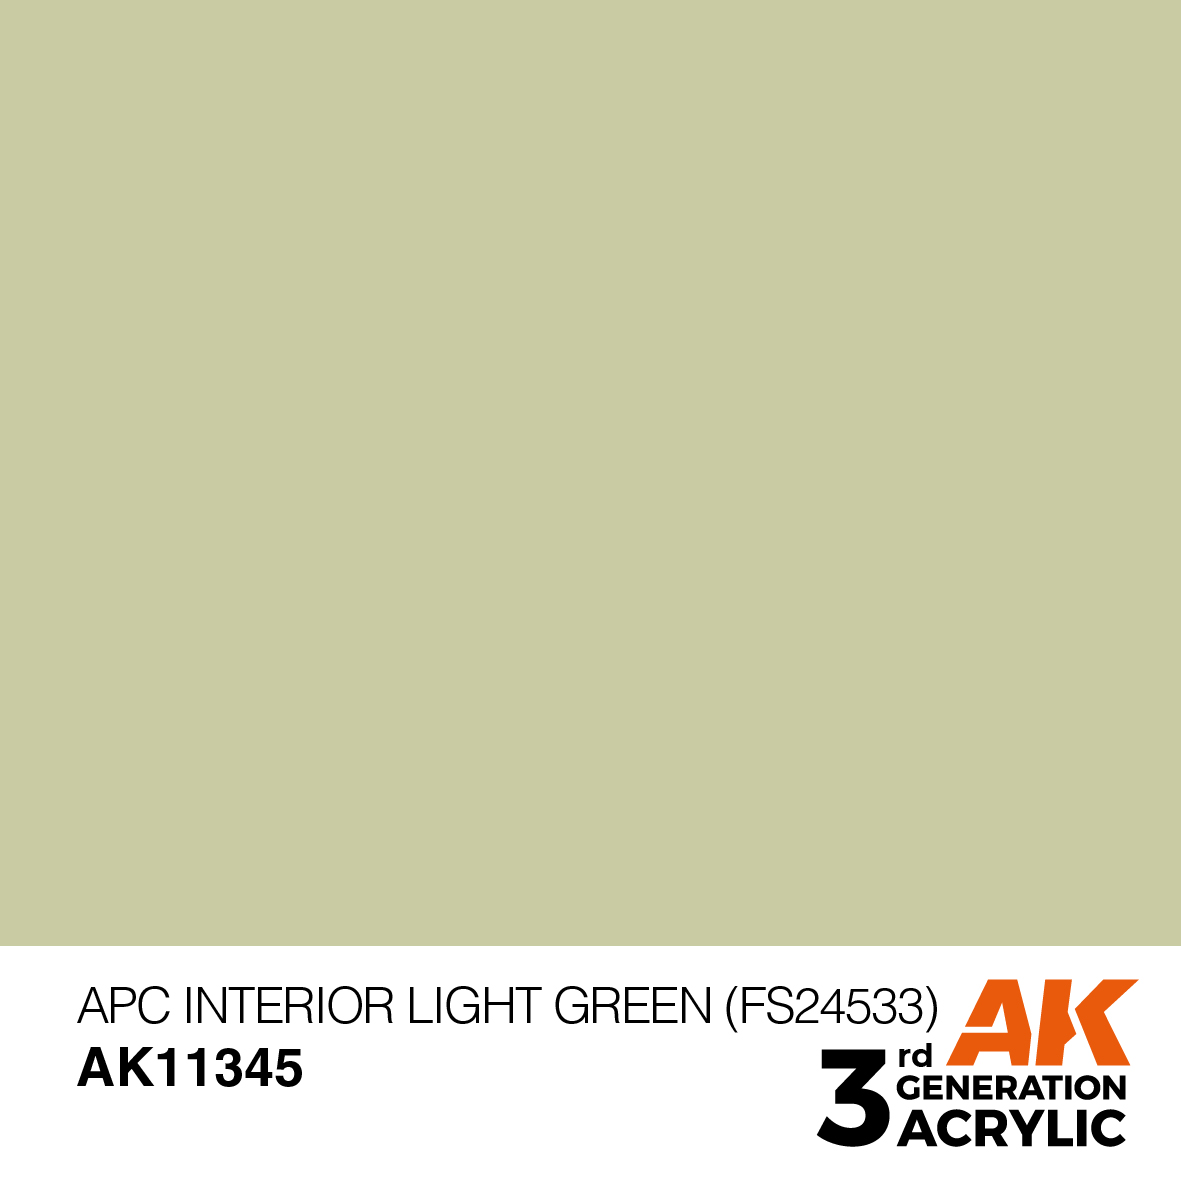 APC INTERIOR LIGHT GREEN (FS24533) – AFV